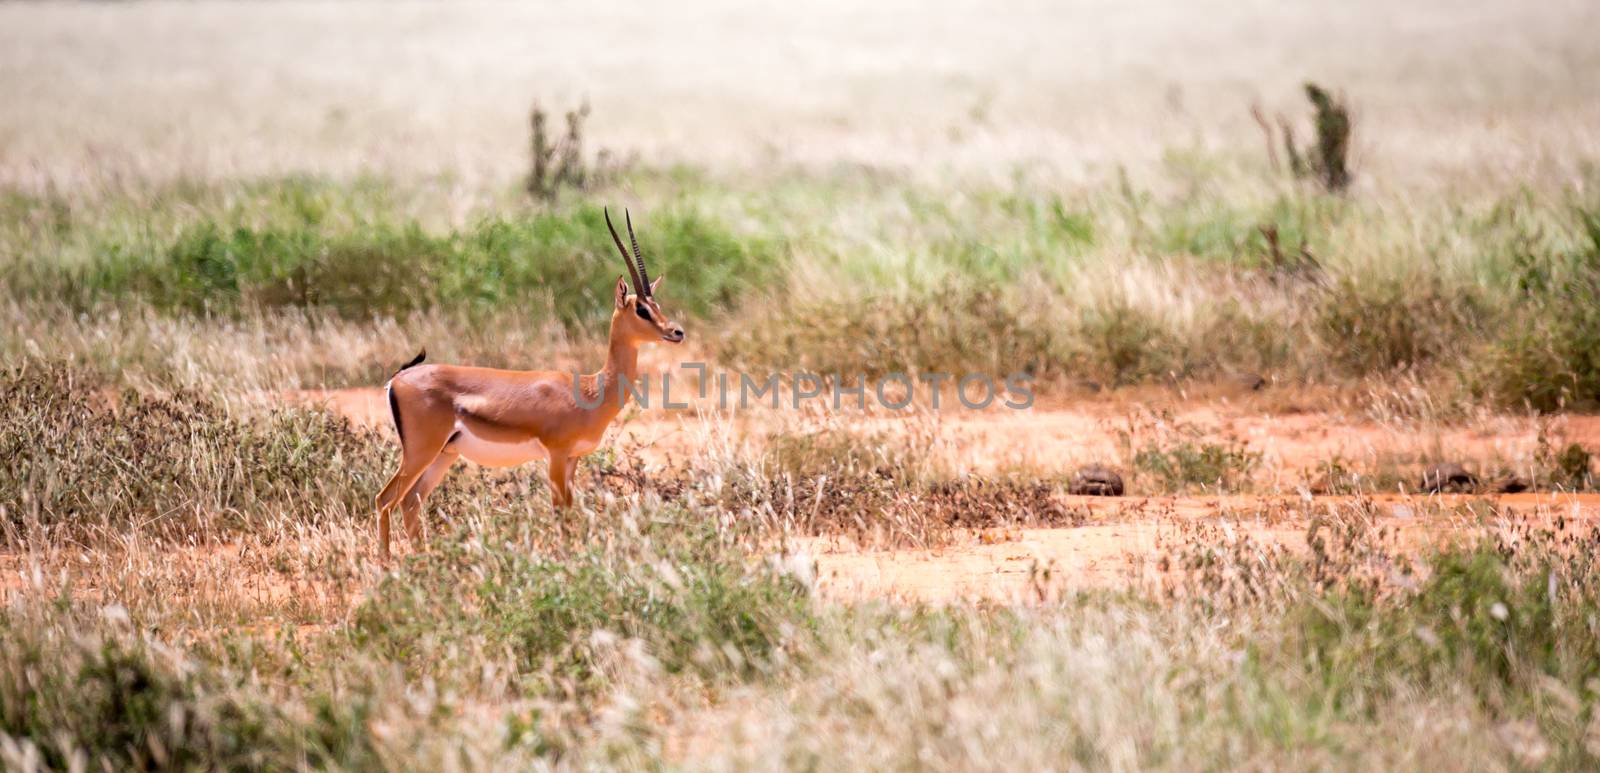 Grant Gazelle grazes in the vastness of the Kenyan savannah by 25ehaag6